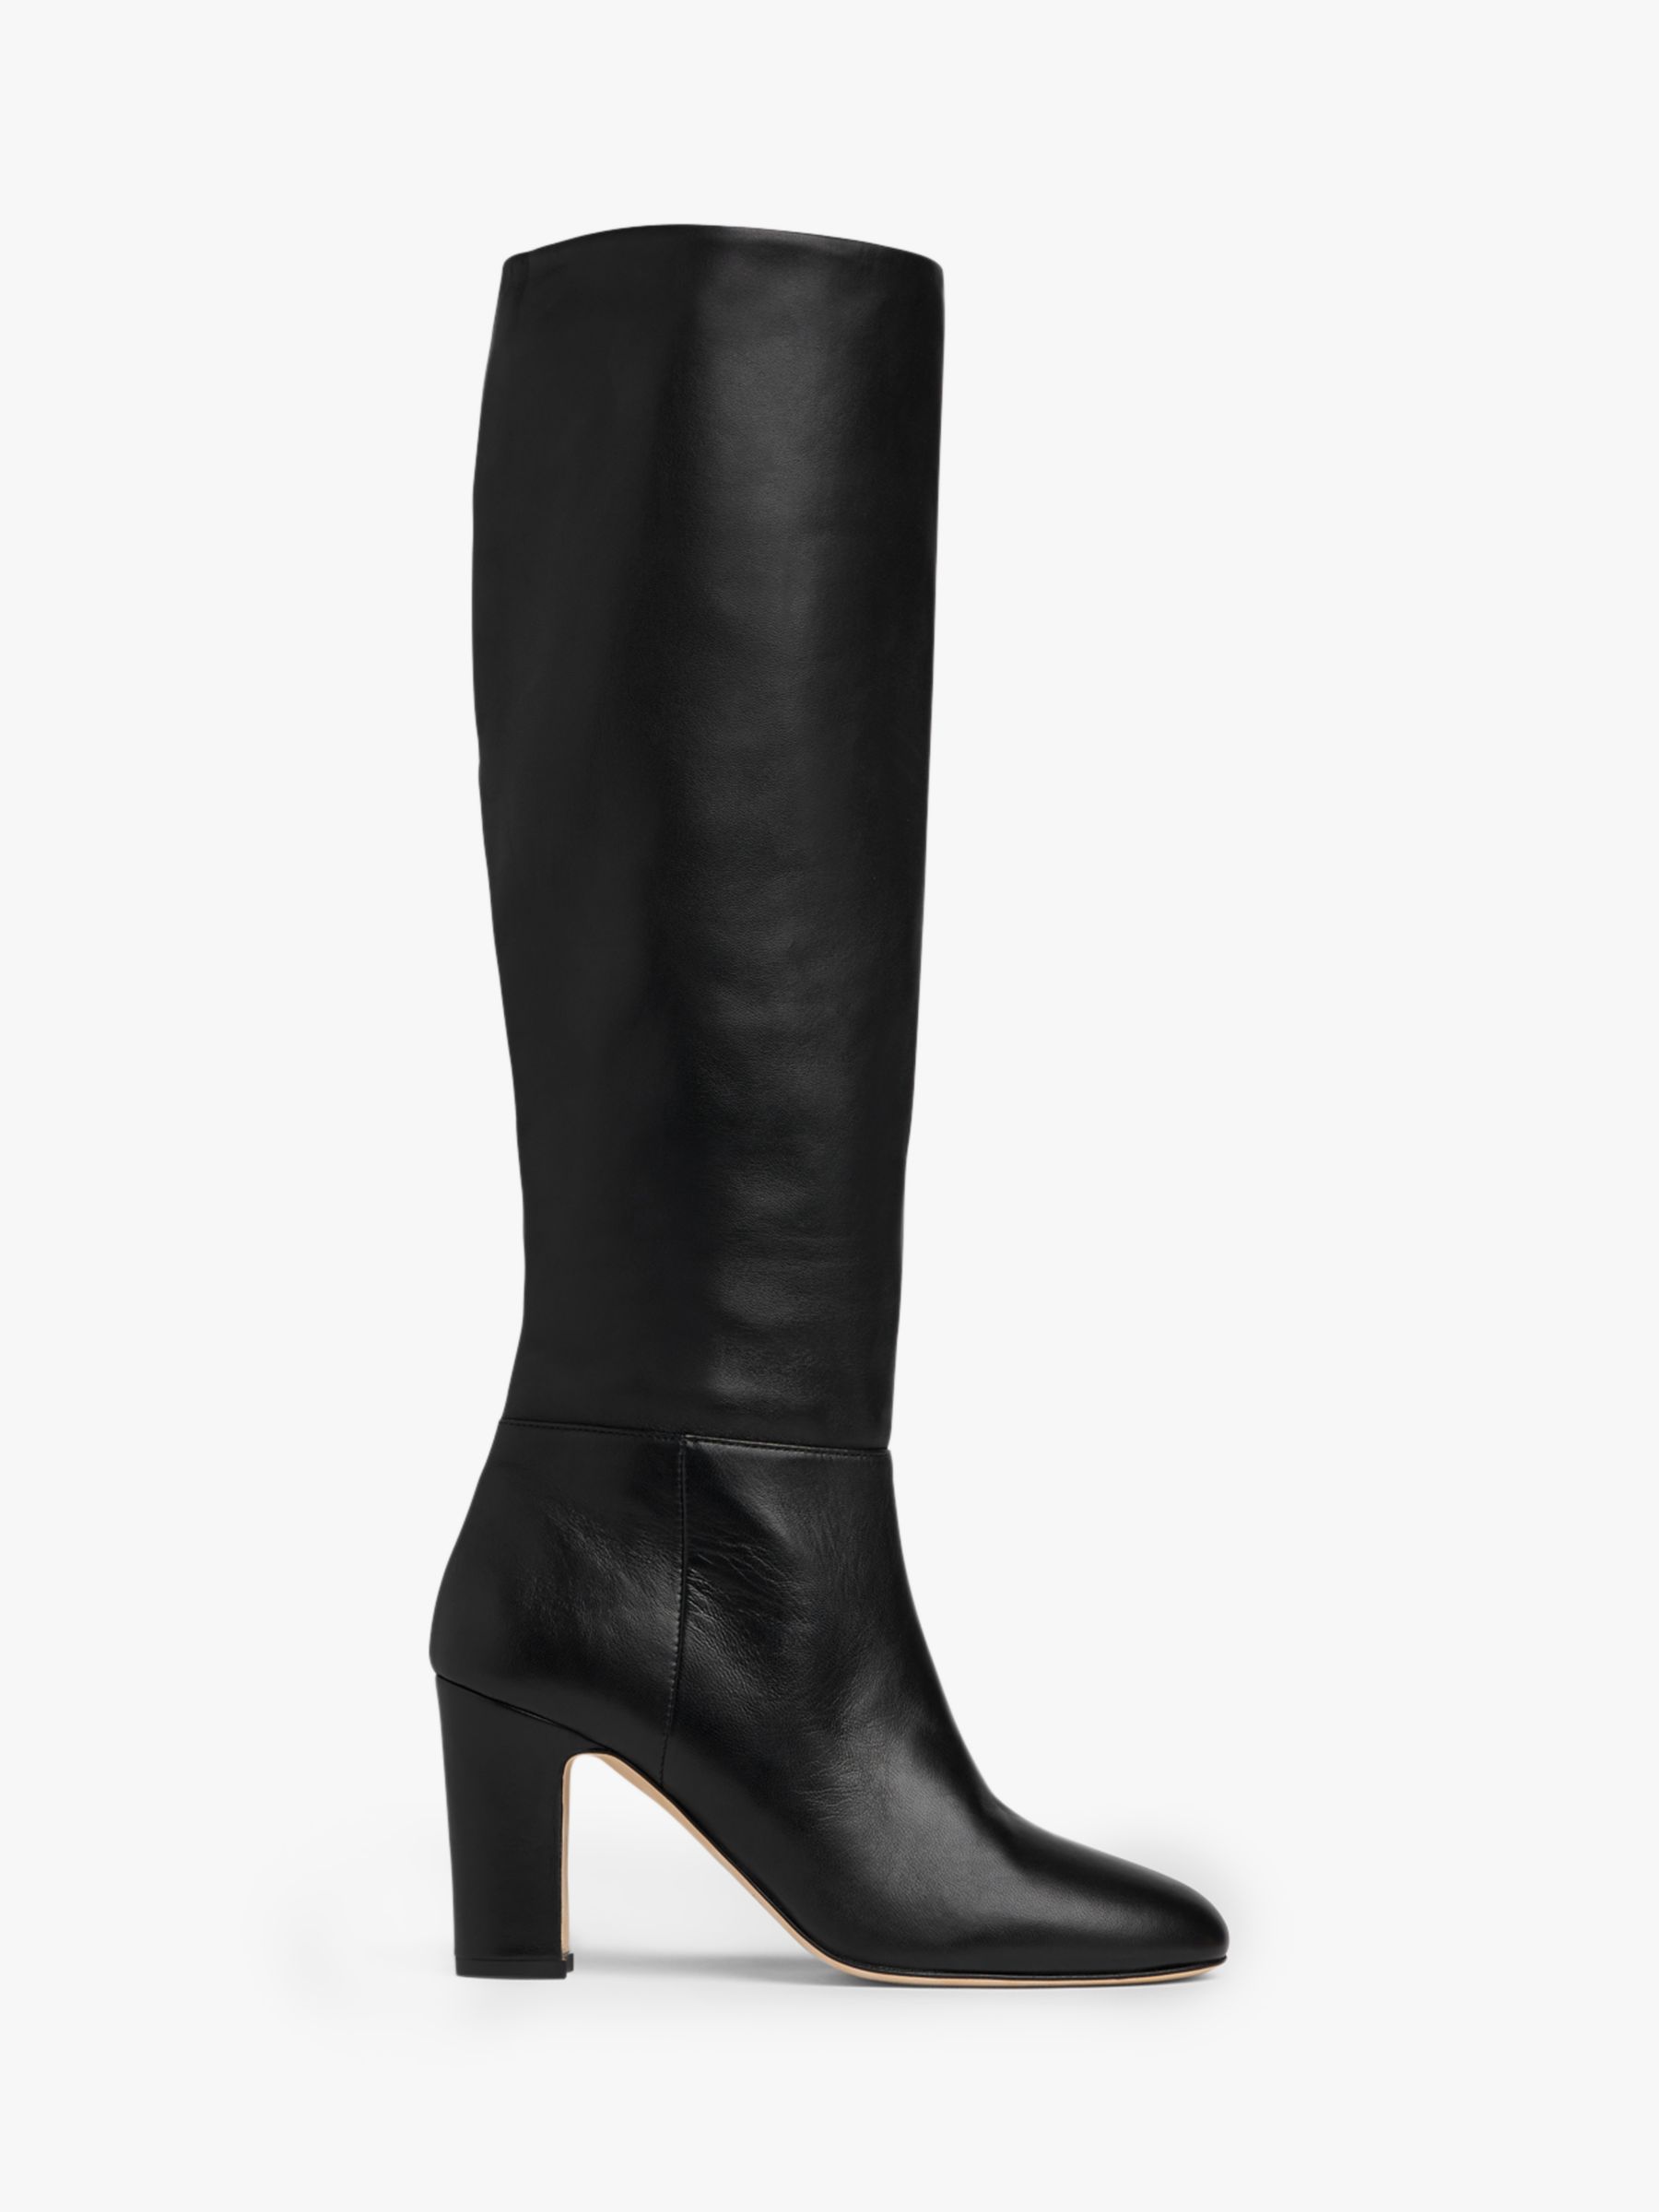 L.K.Bennett Kristen Leather Knee High Boots, Black, 2